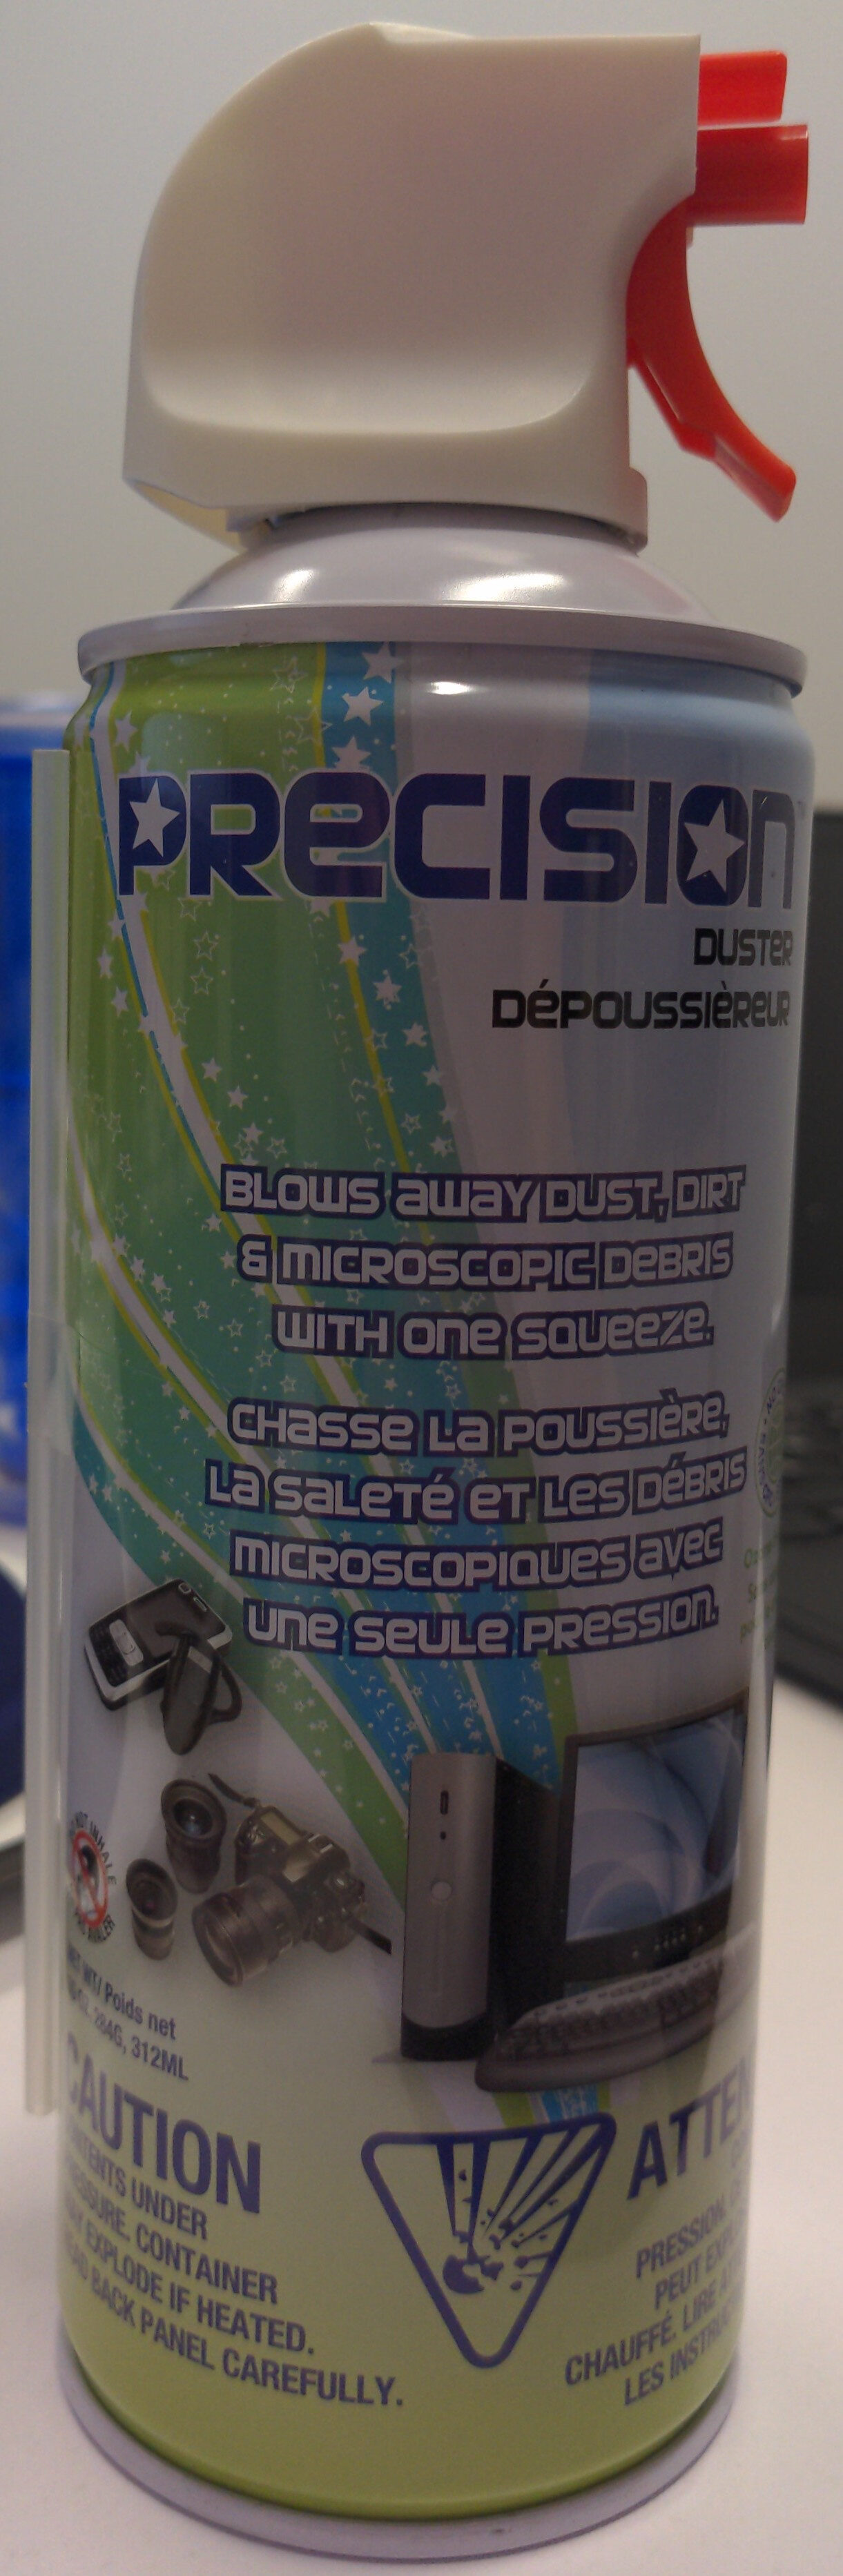 Dépoussièreur - Product - fr